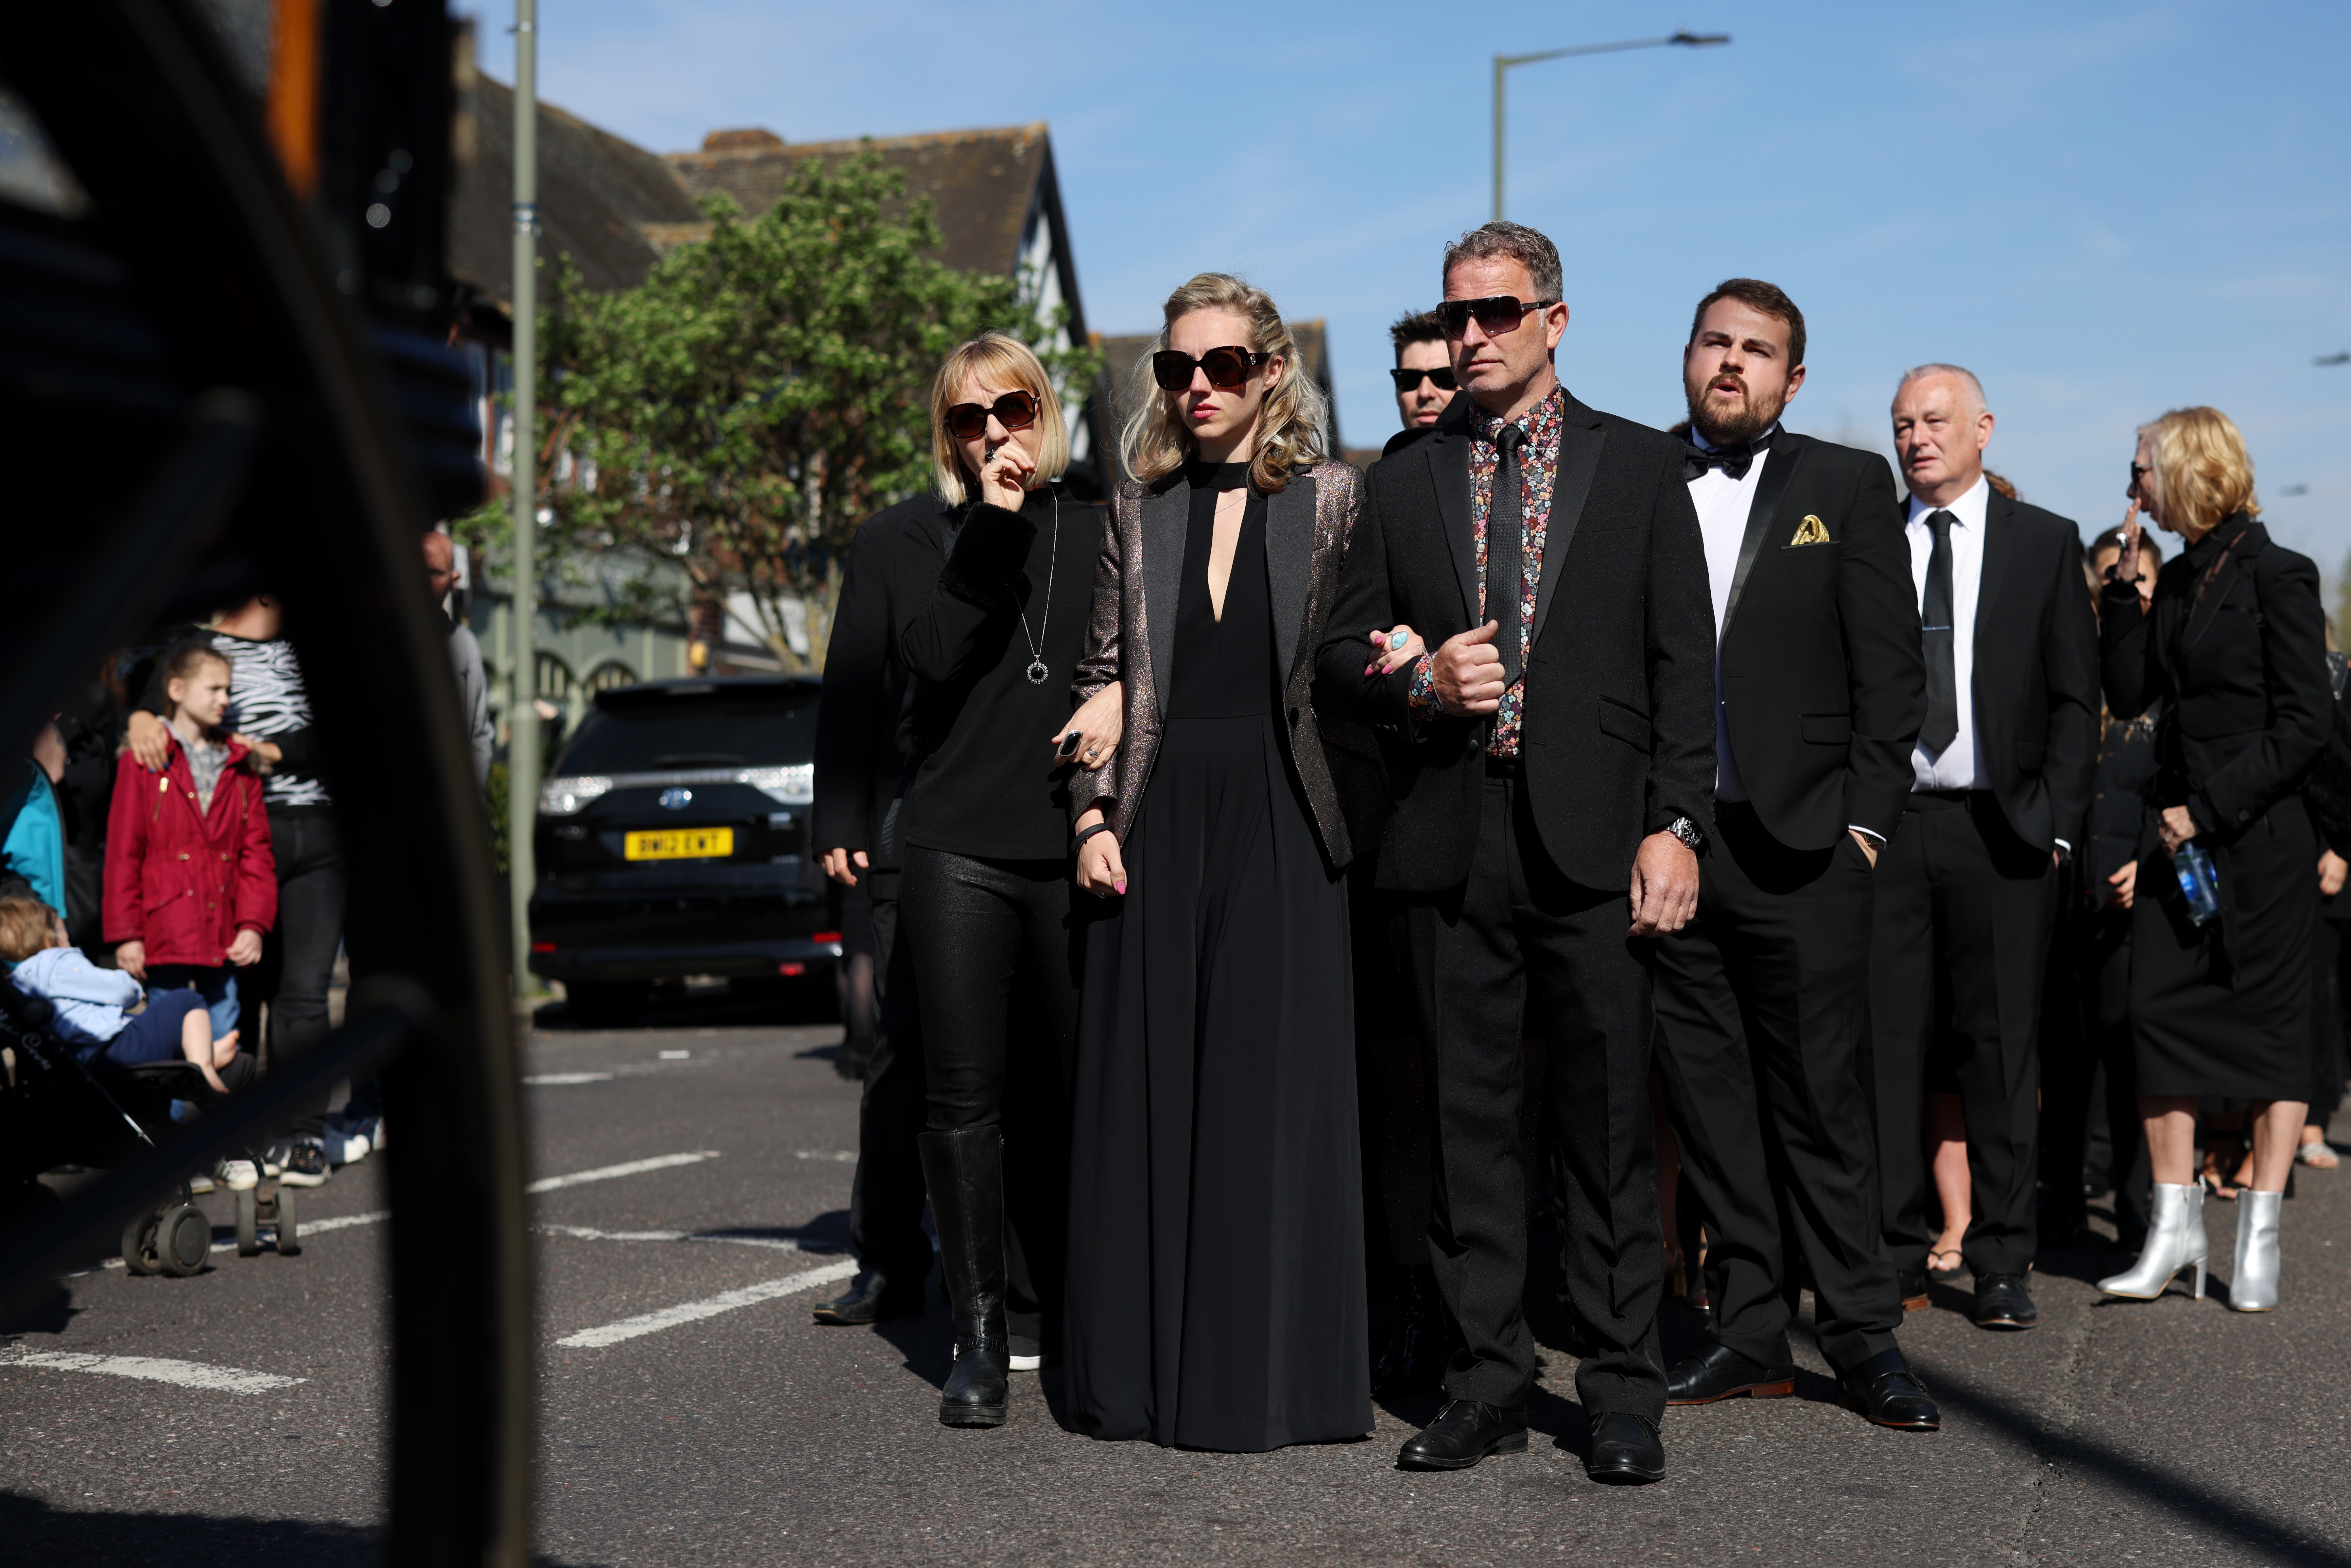  Kelsey Parker, a esposa de Tom, chega ao funeral amparada por familiares e amigos (Foto: getty)